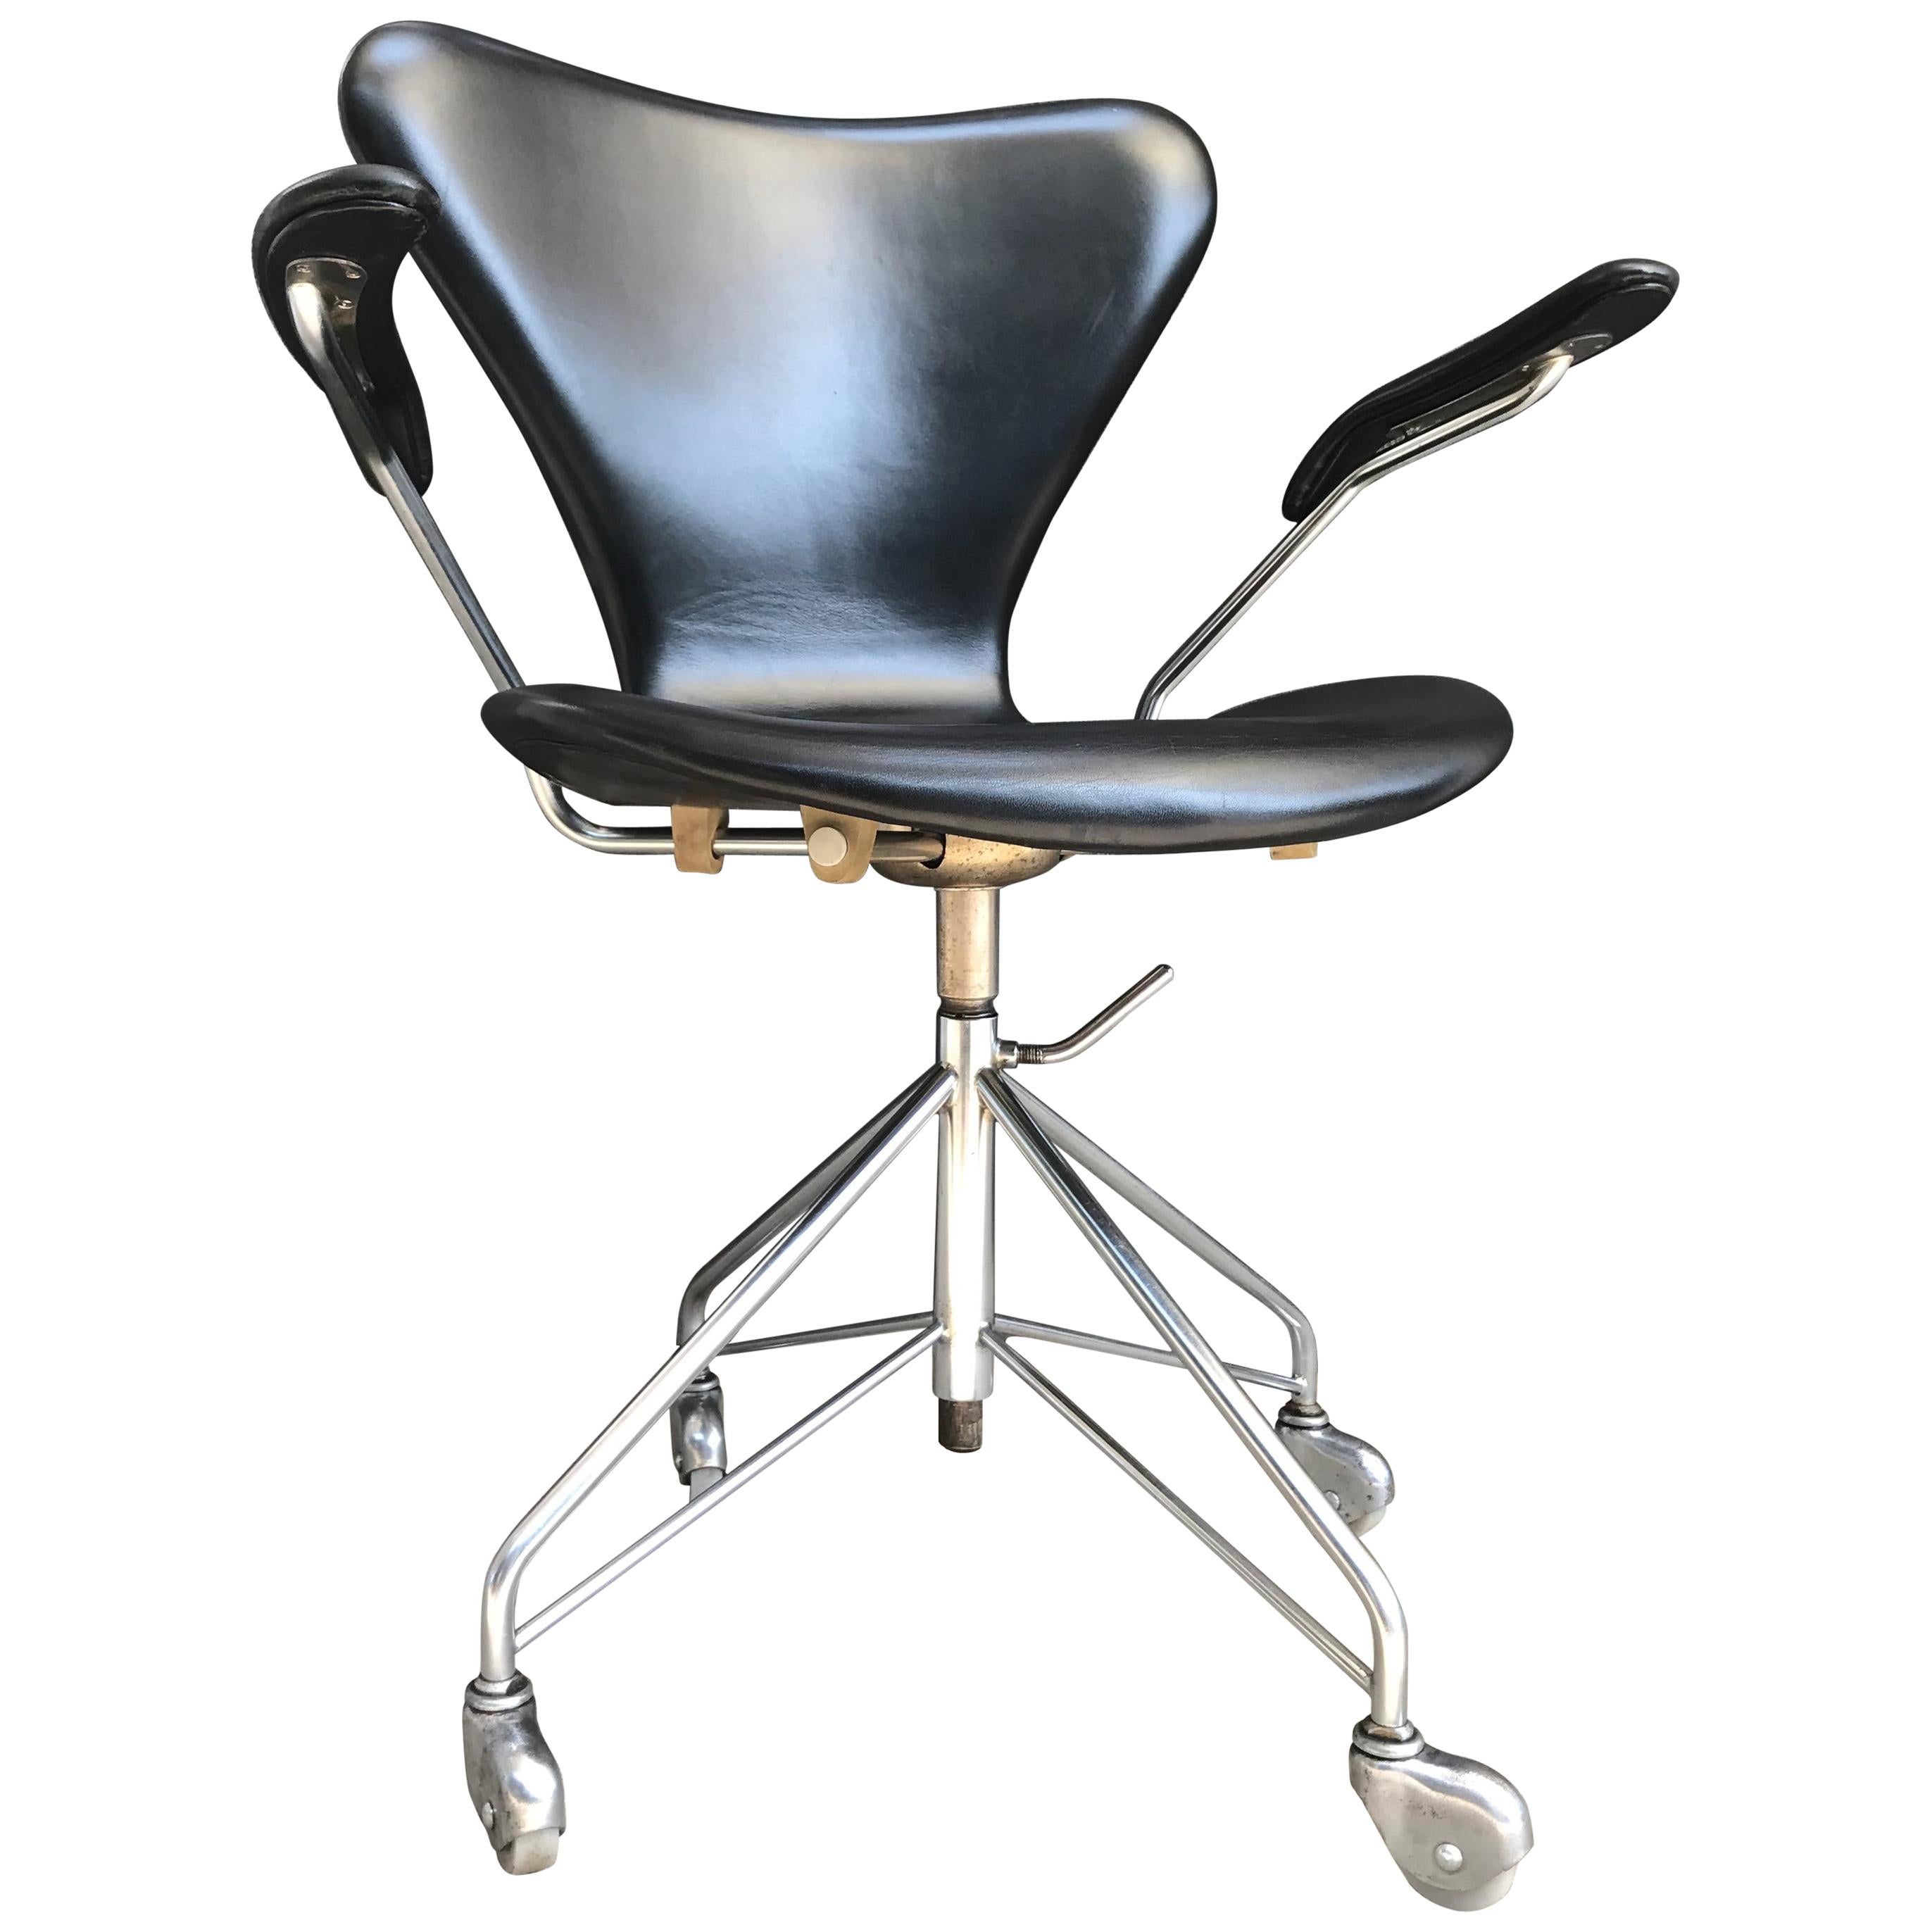 Vintage Arne Jacobsen Office Swivel Stool Chair Model 3217 by Fritz Hansen